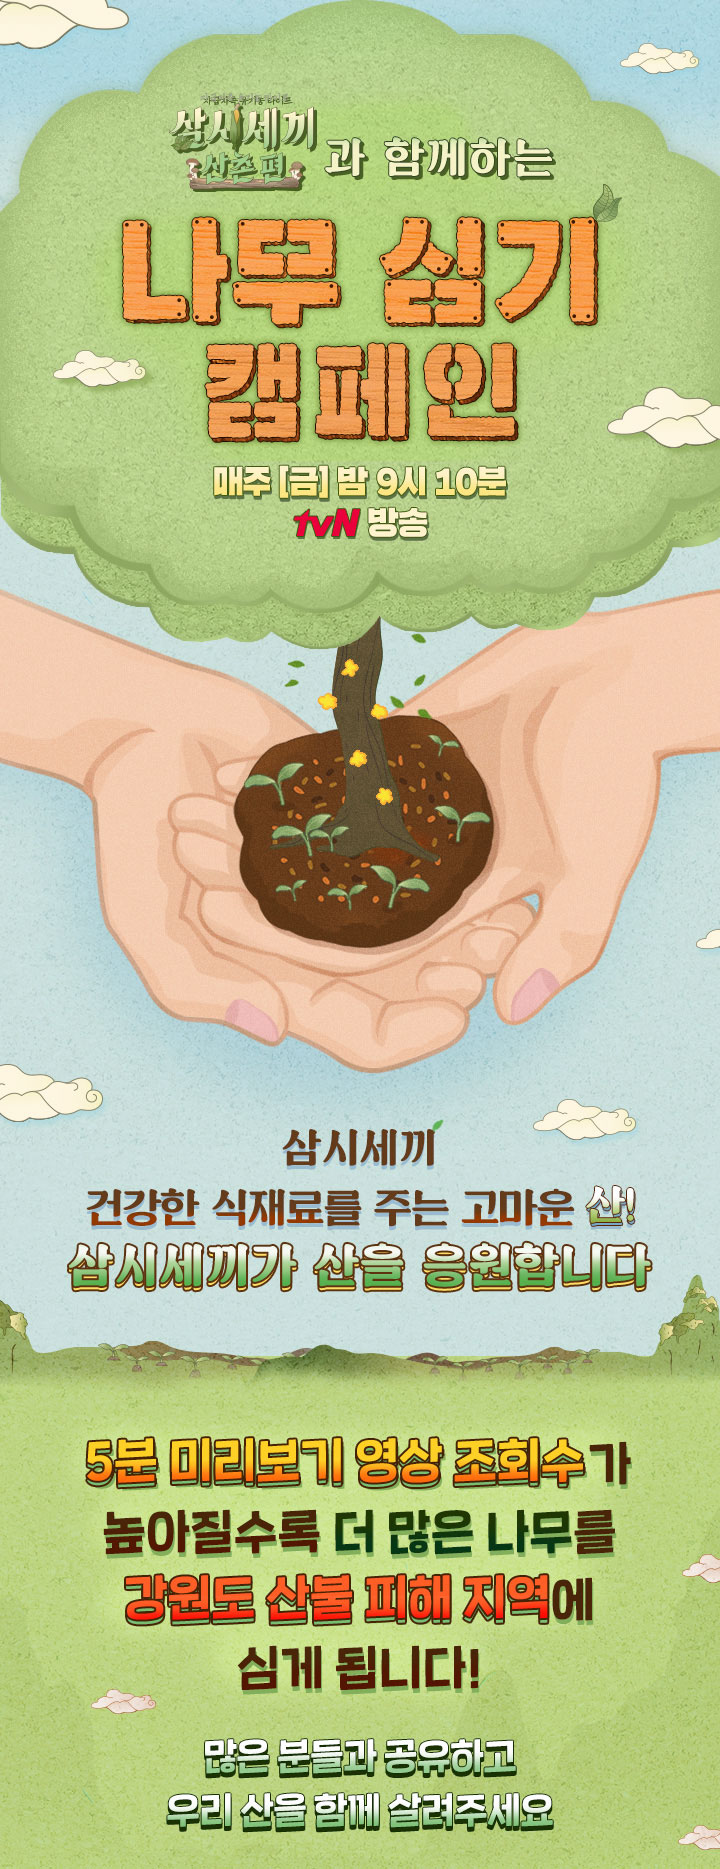 [삼시세끼 산촌편] 나무 심기 캠페인